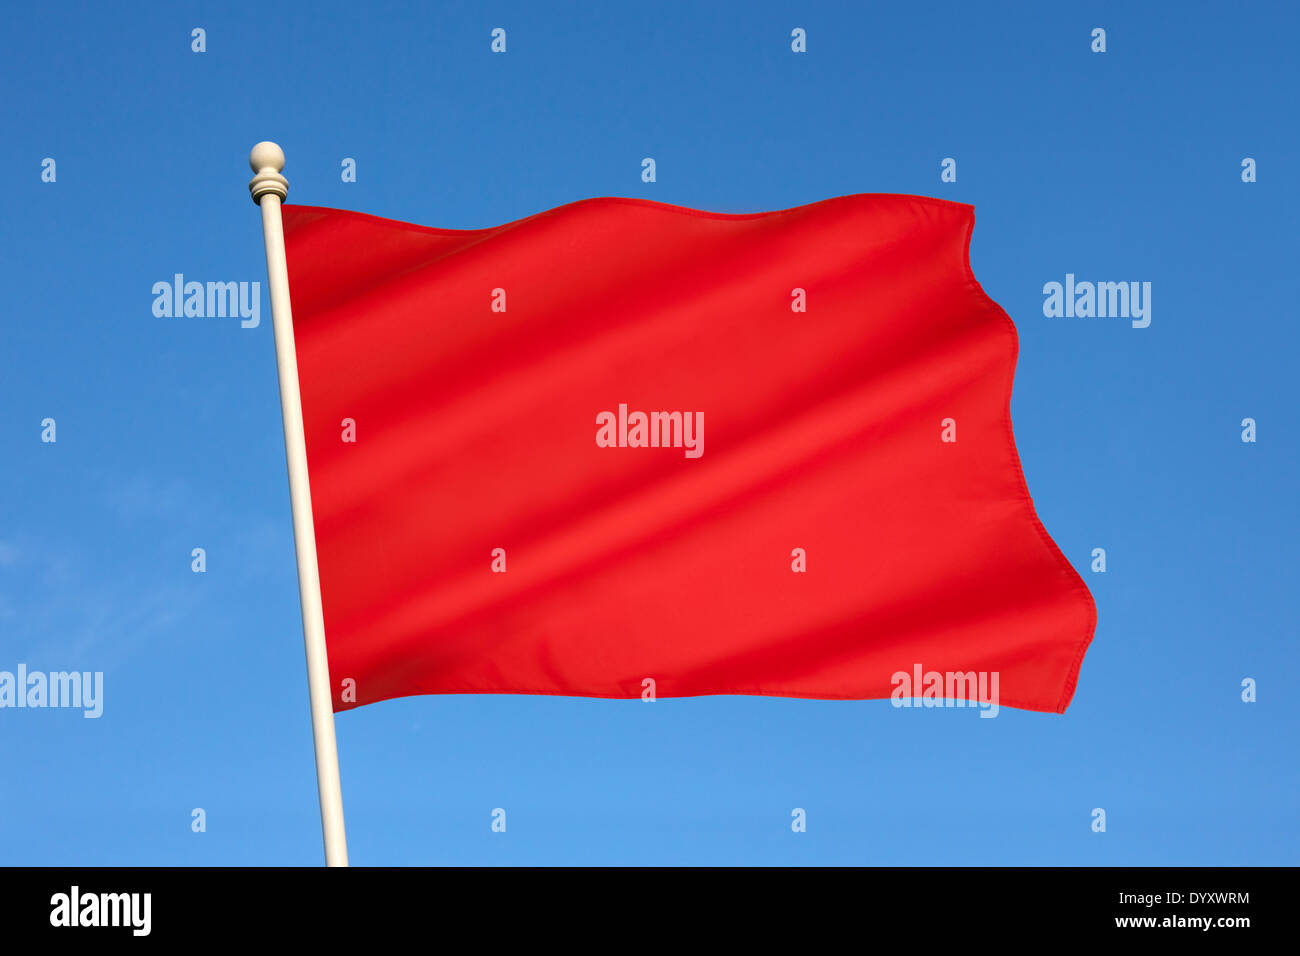 Red flag of Danger Stock Photo